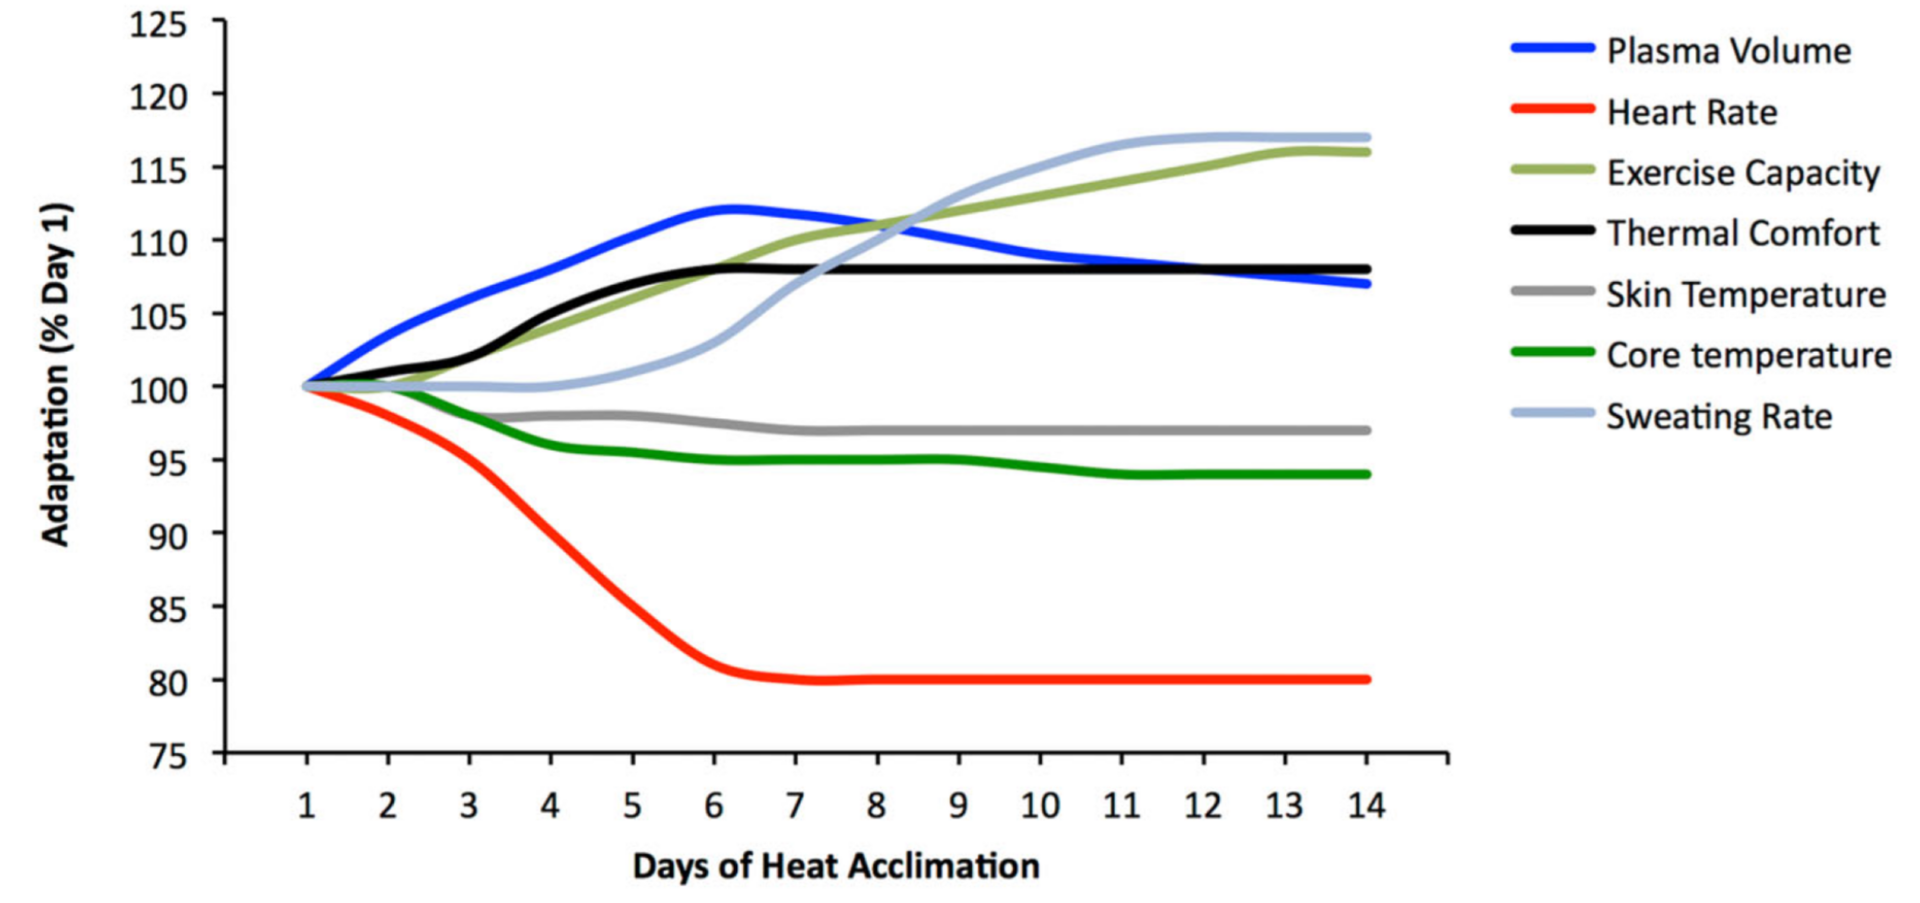 L'acclimatation à la chaleur est relativement rapide et la capacité de performance augmente prestement.